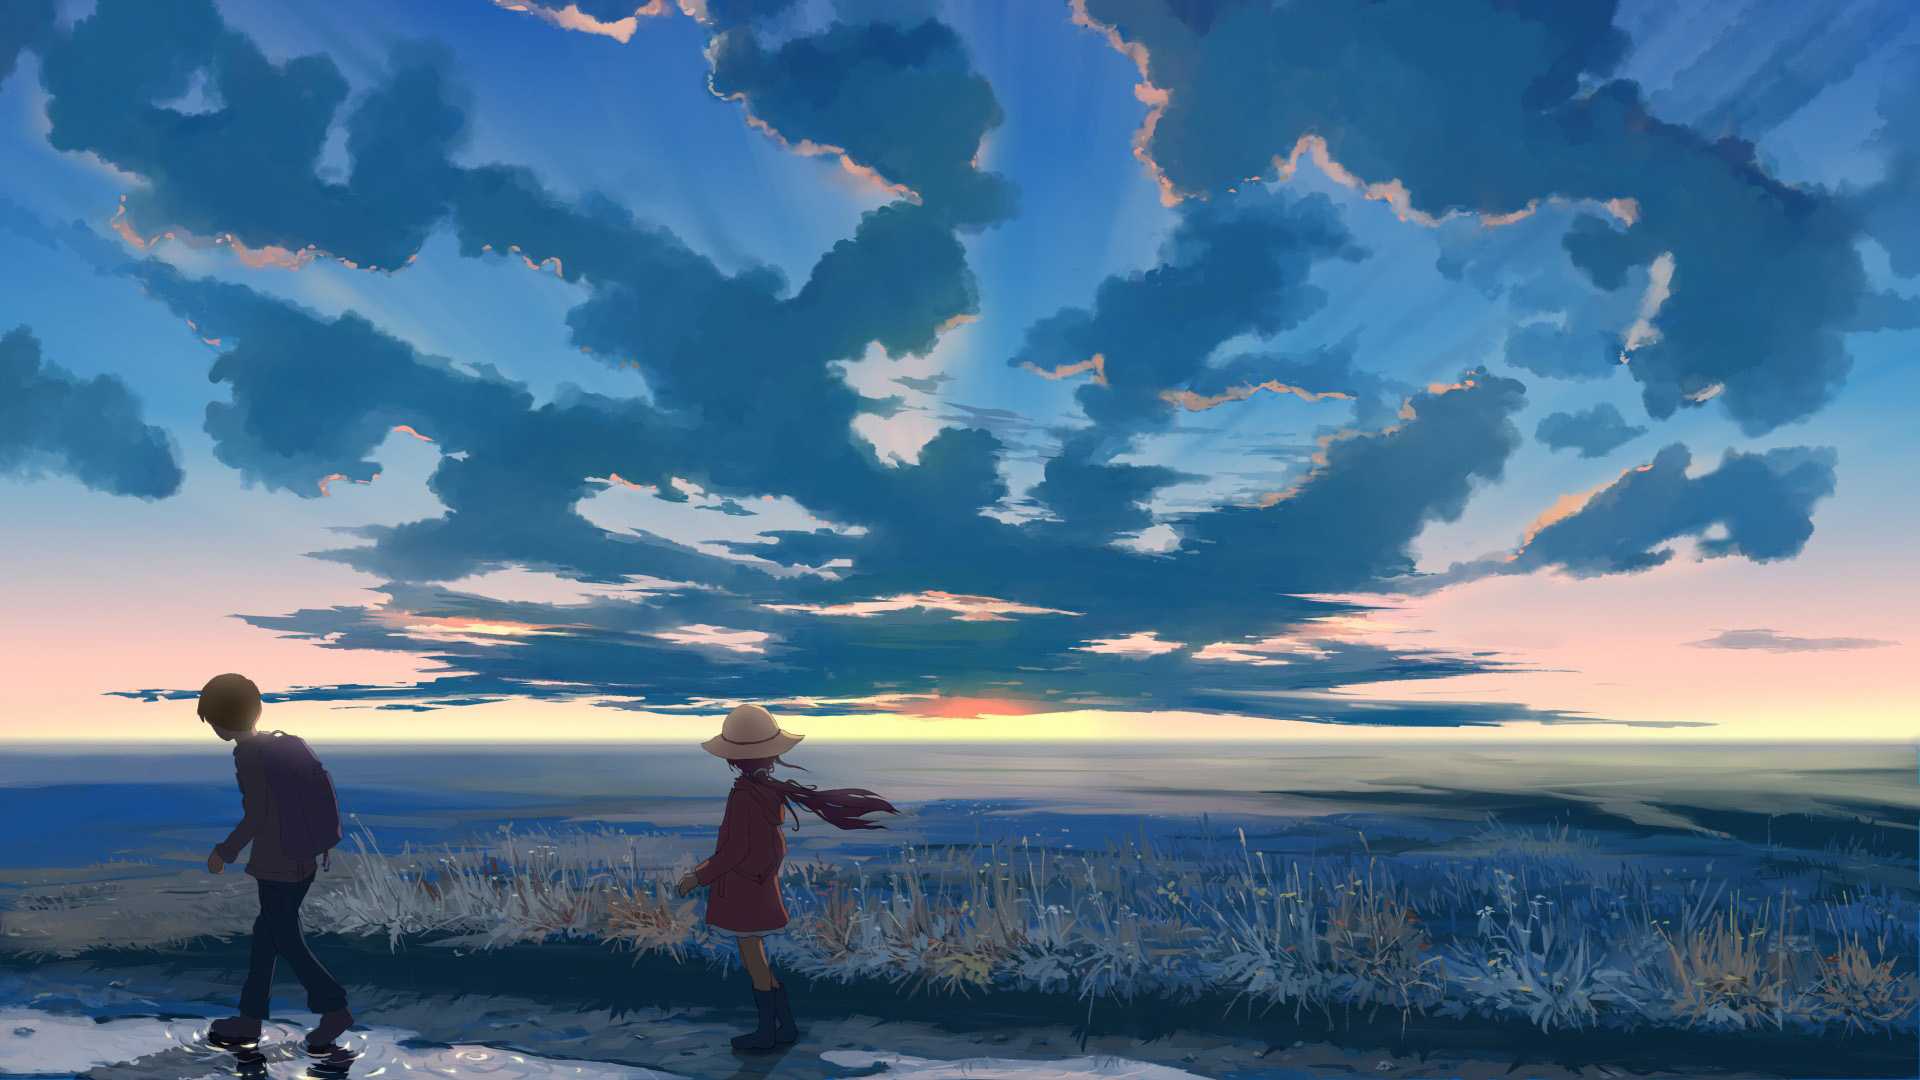 女孩,男孩,帽子,天空,云,浪漫风景动漫桌面壁纸